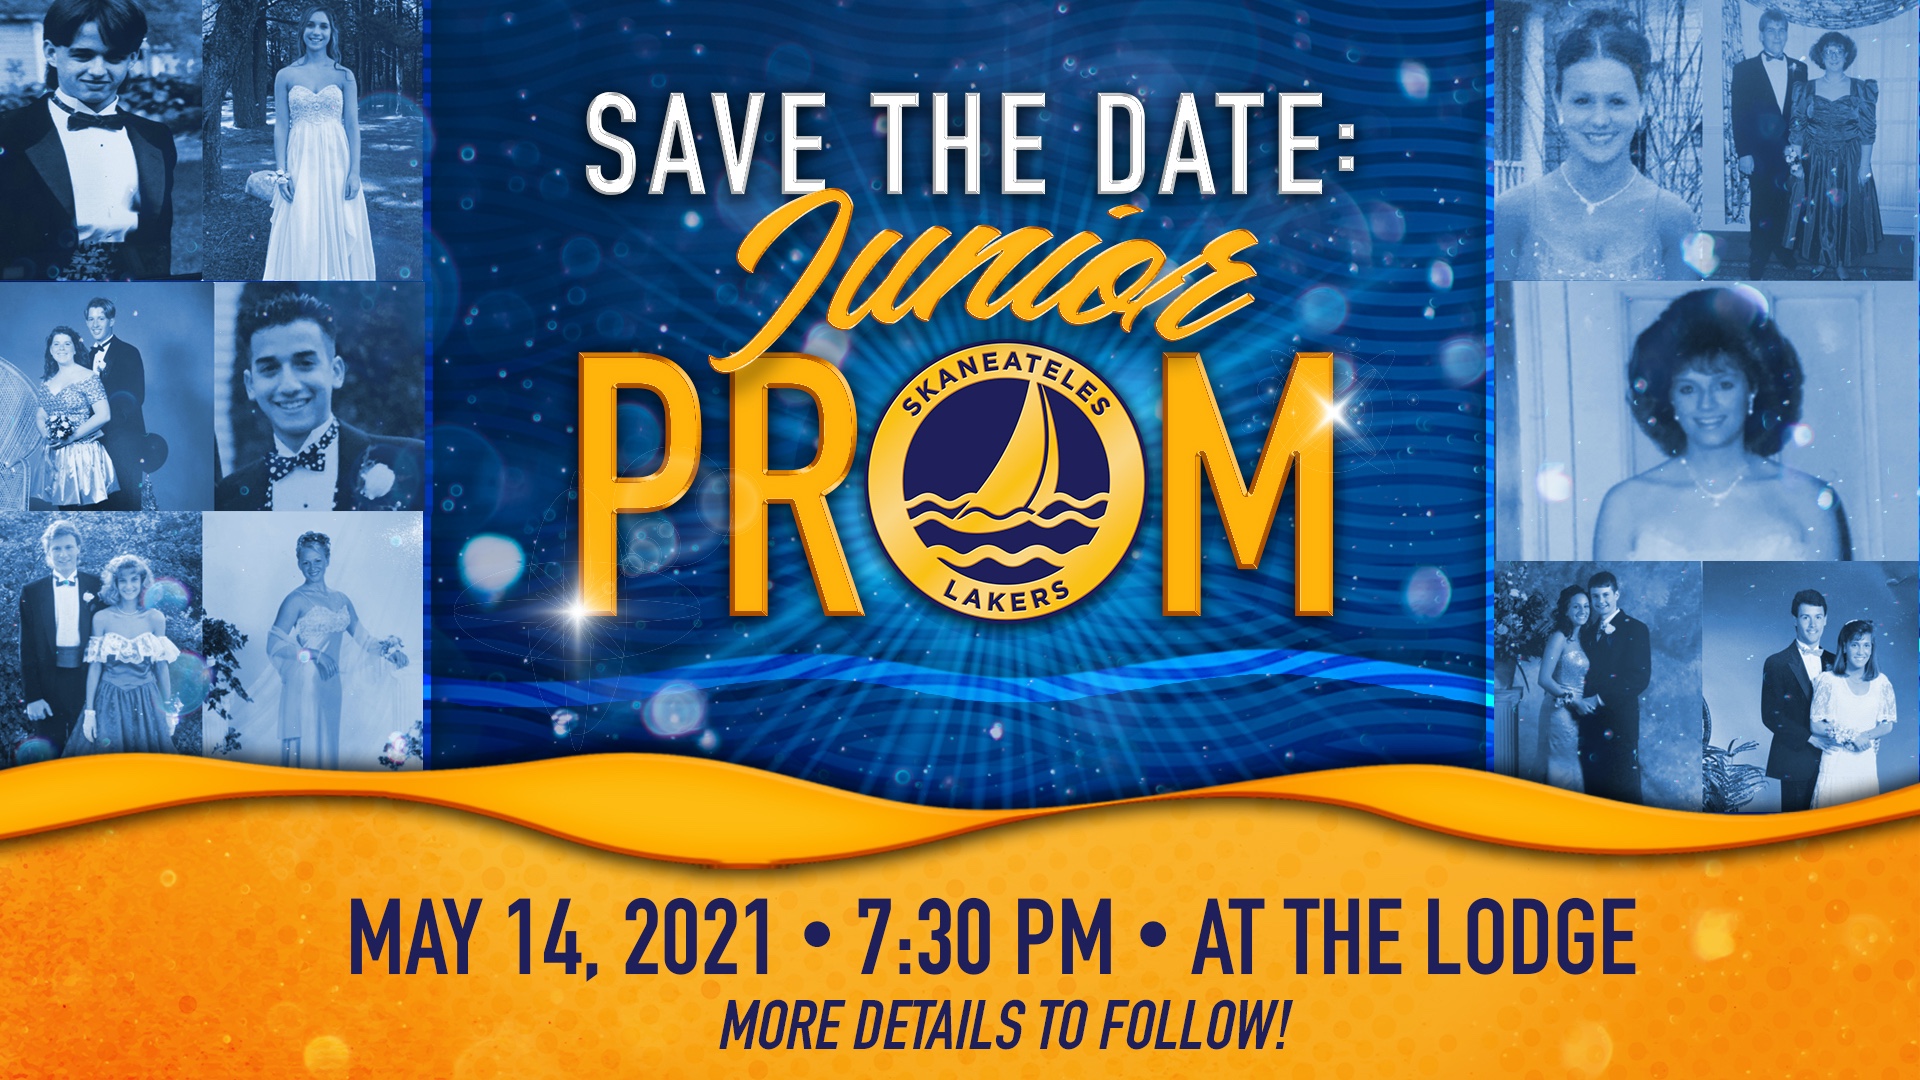 Junior Prom: Friday, May 14 at 7:30 pm